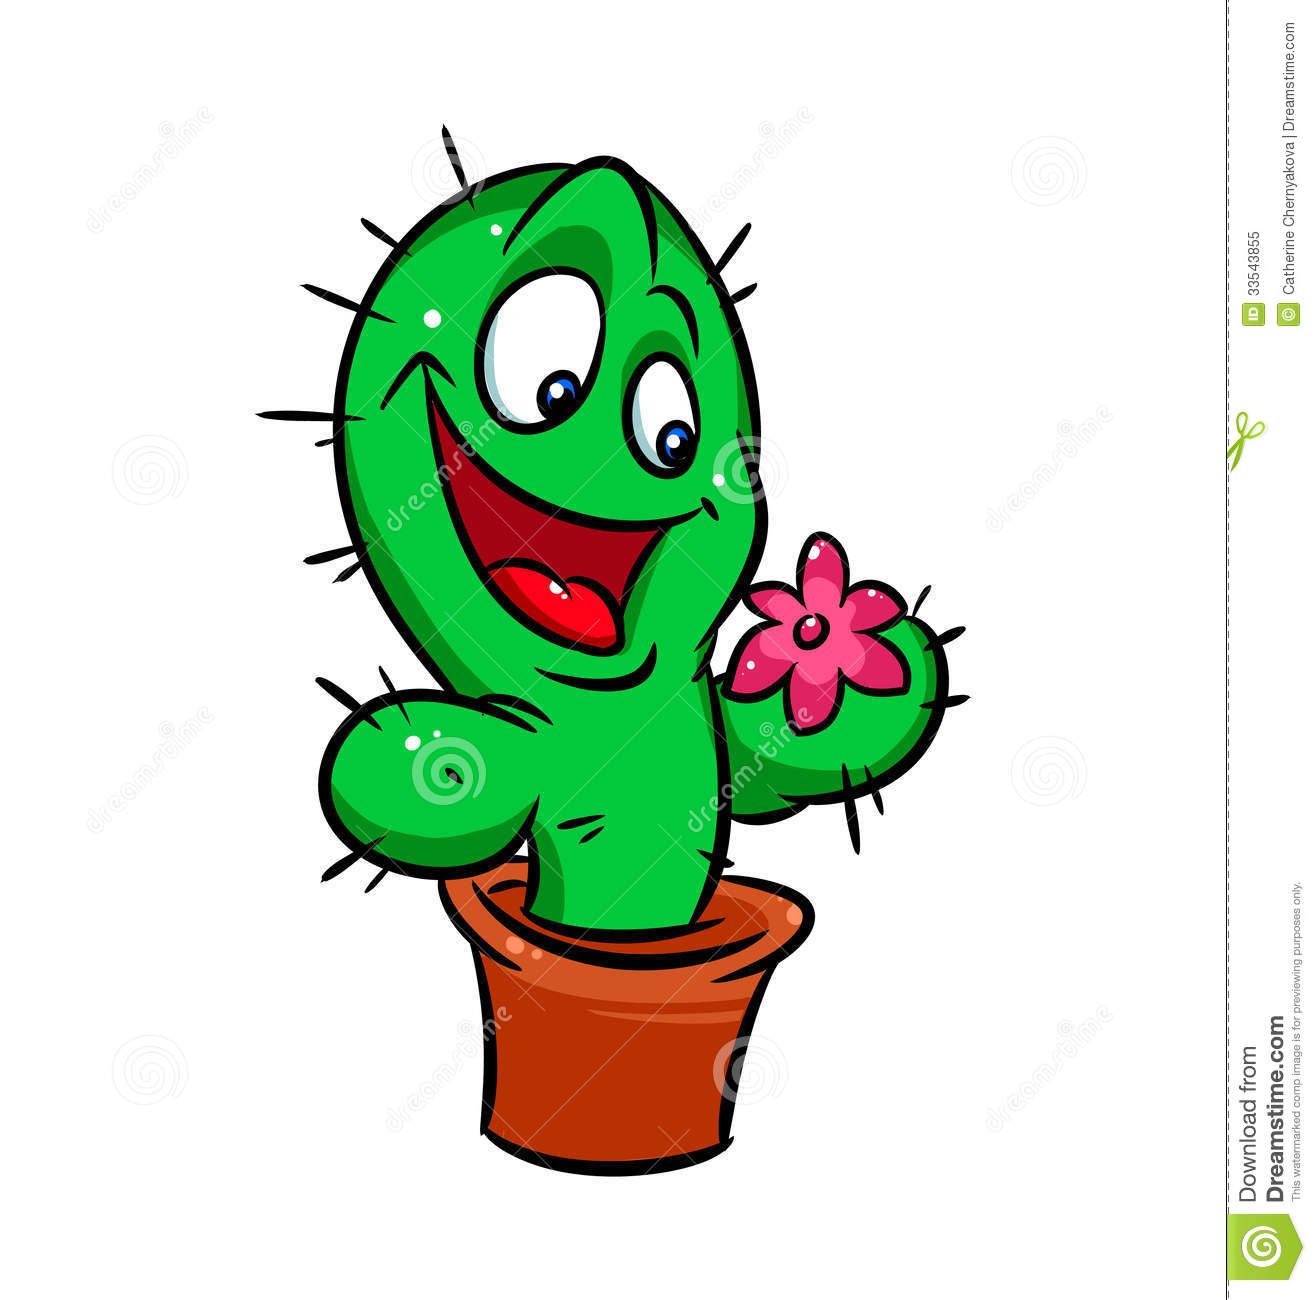 Cactus fun